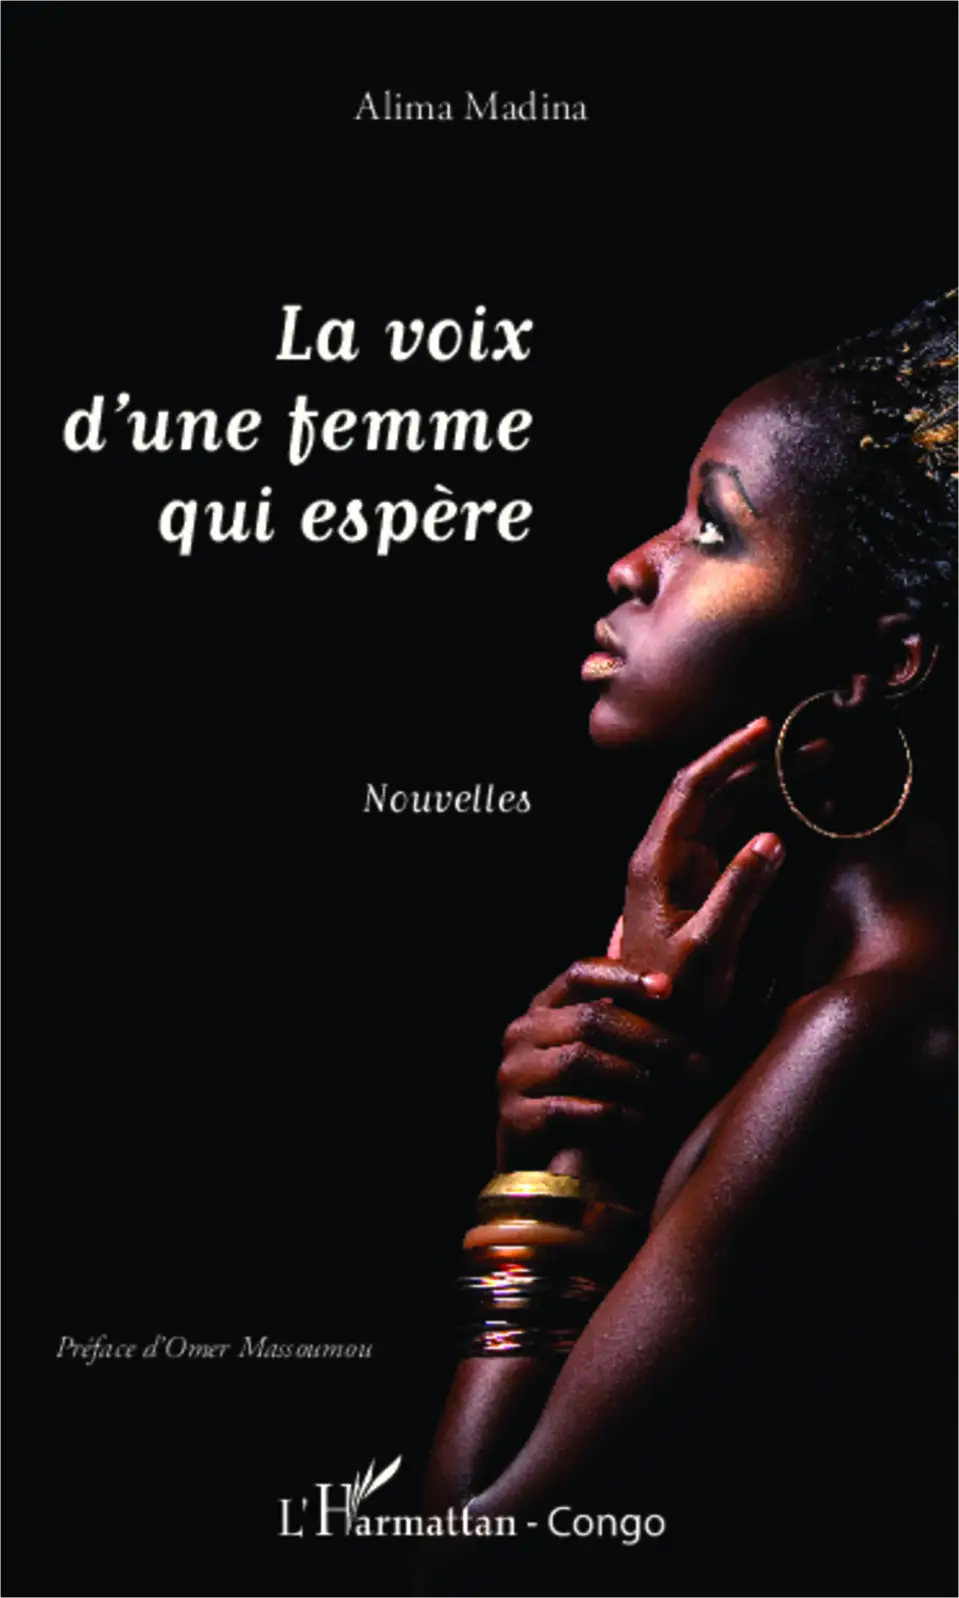 Livre : « LA VOIX D'UNE FEMME QUI ESPÈRE » d'Alima Madina retrace le parcours difficile des femmes vers la quête du véritable bonheur